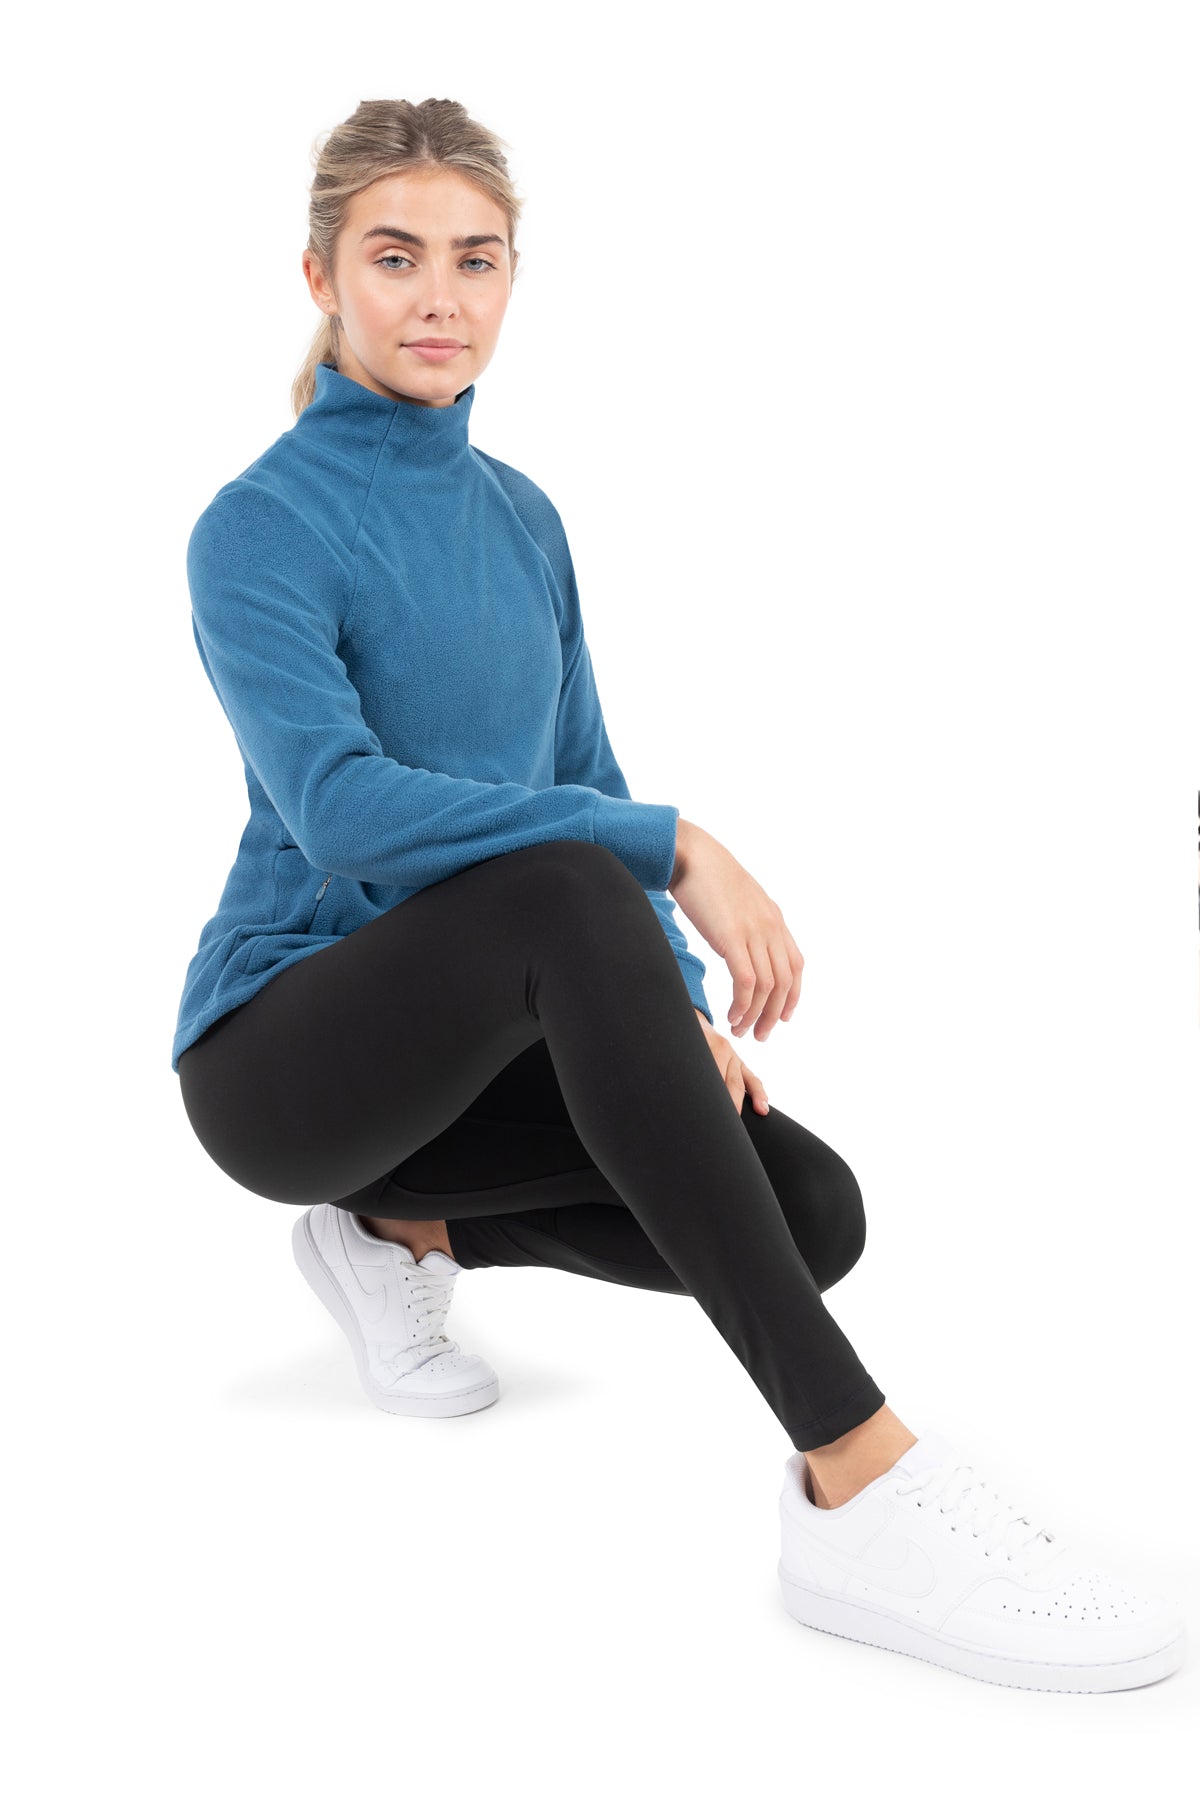 CLZOUD Yoga Pants Women Black Polyester,Spandex Women Leggings